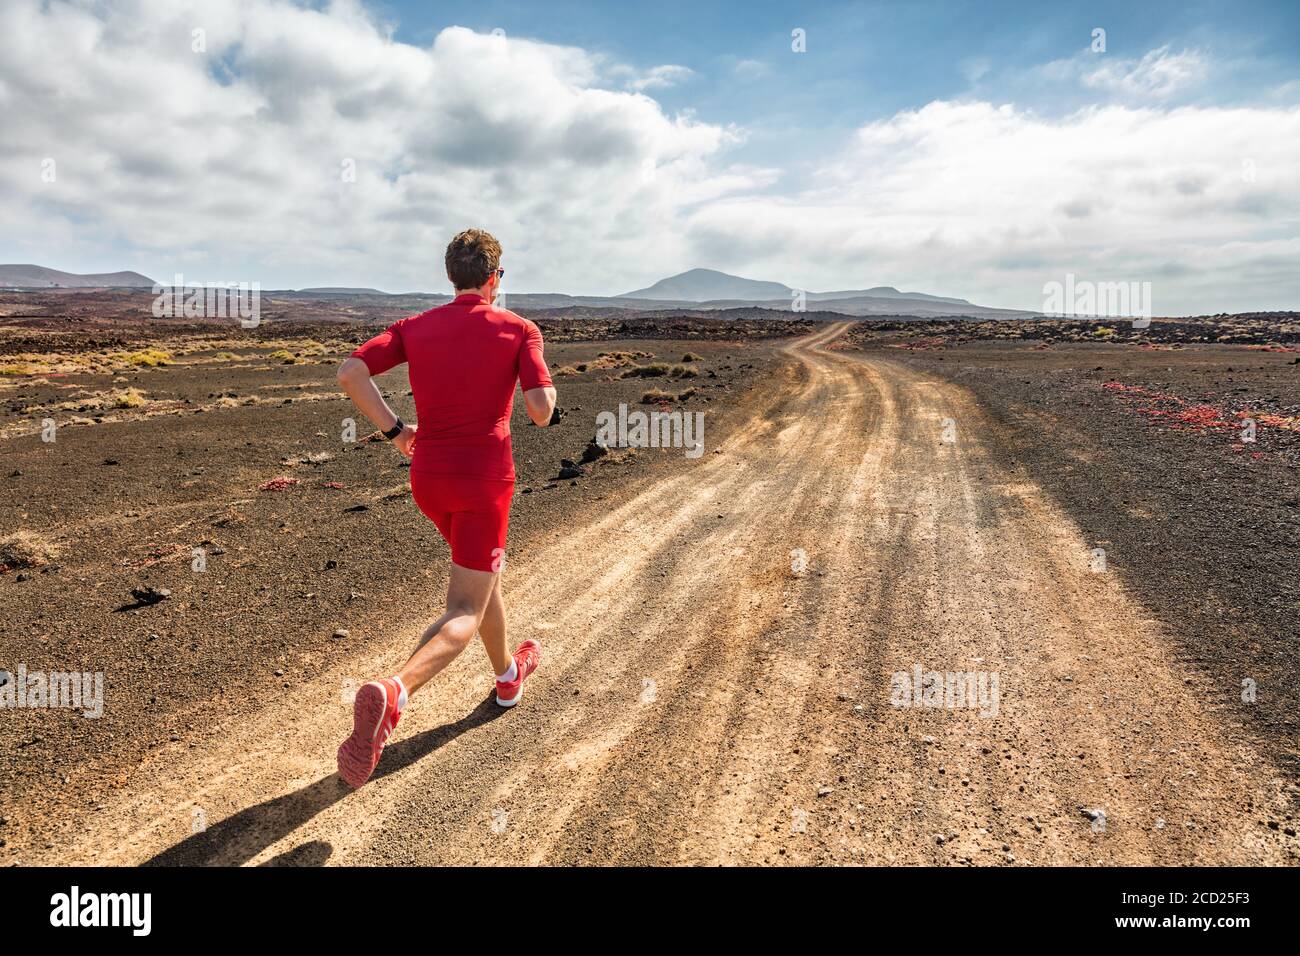 Atleta corredor corriendo en la pista de montaña. Hombre de entrenamiento cardio al aire libre. Deporte deportivo de verano correr en el paisaje desértico. Foto de stock